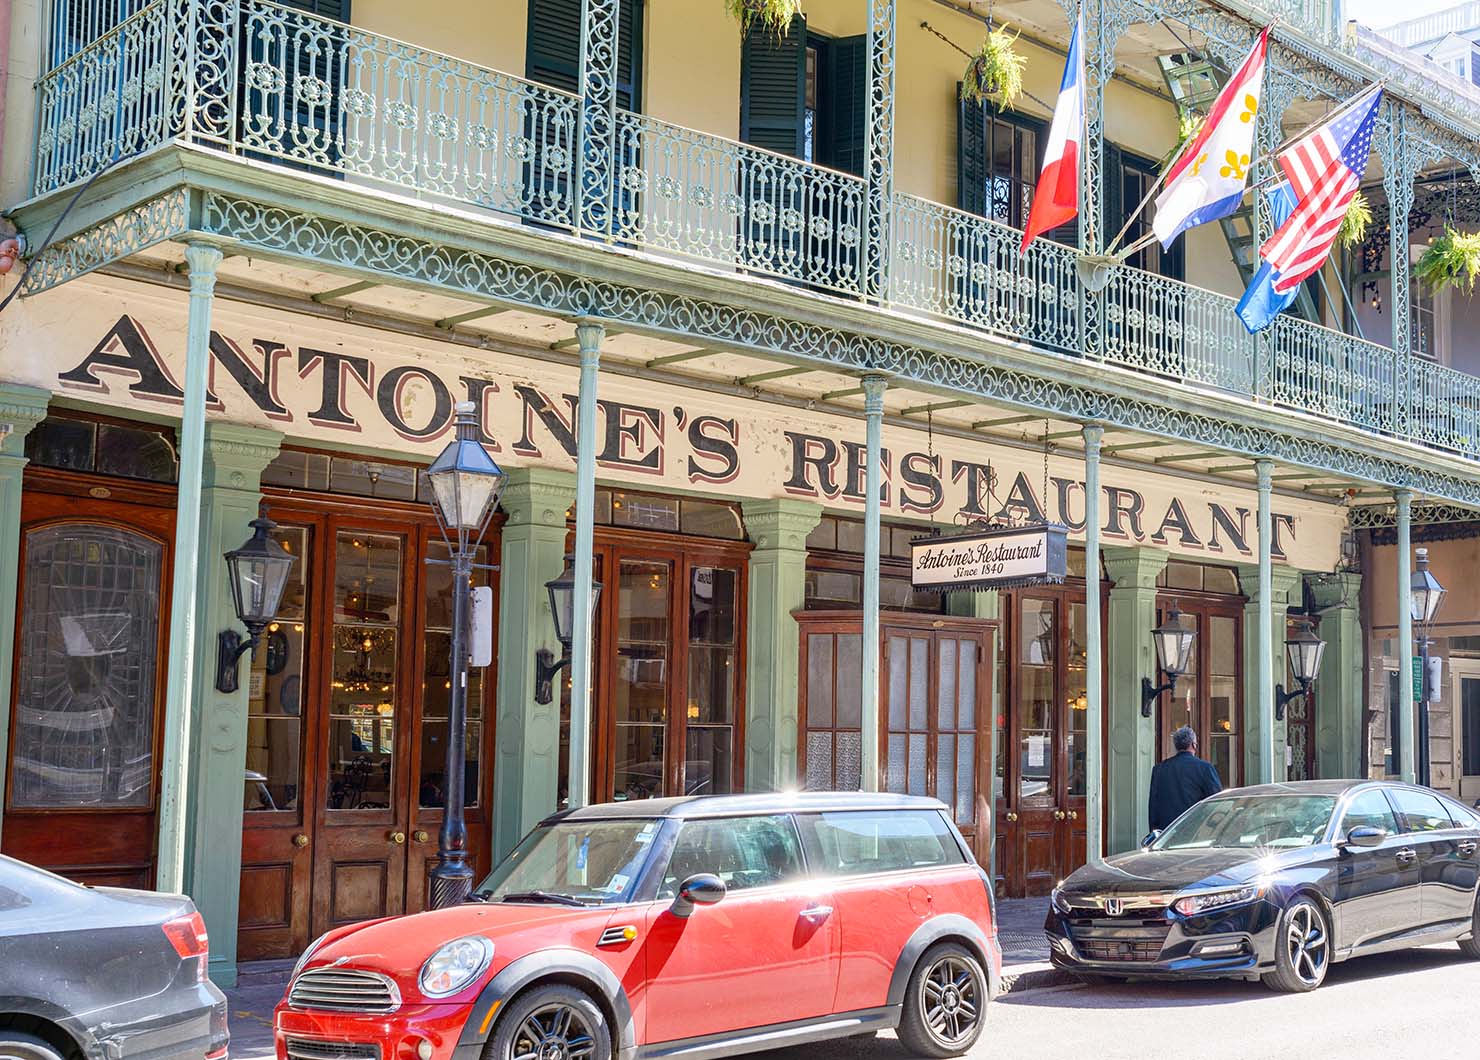 Antonio's Restaurant